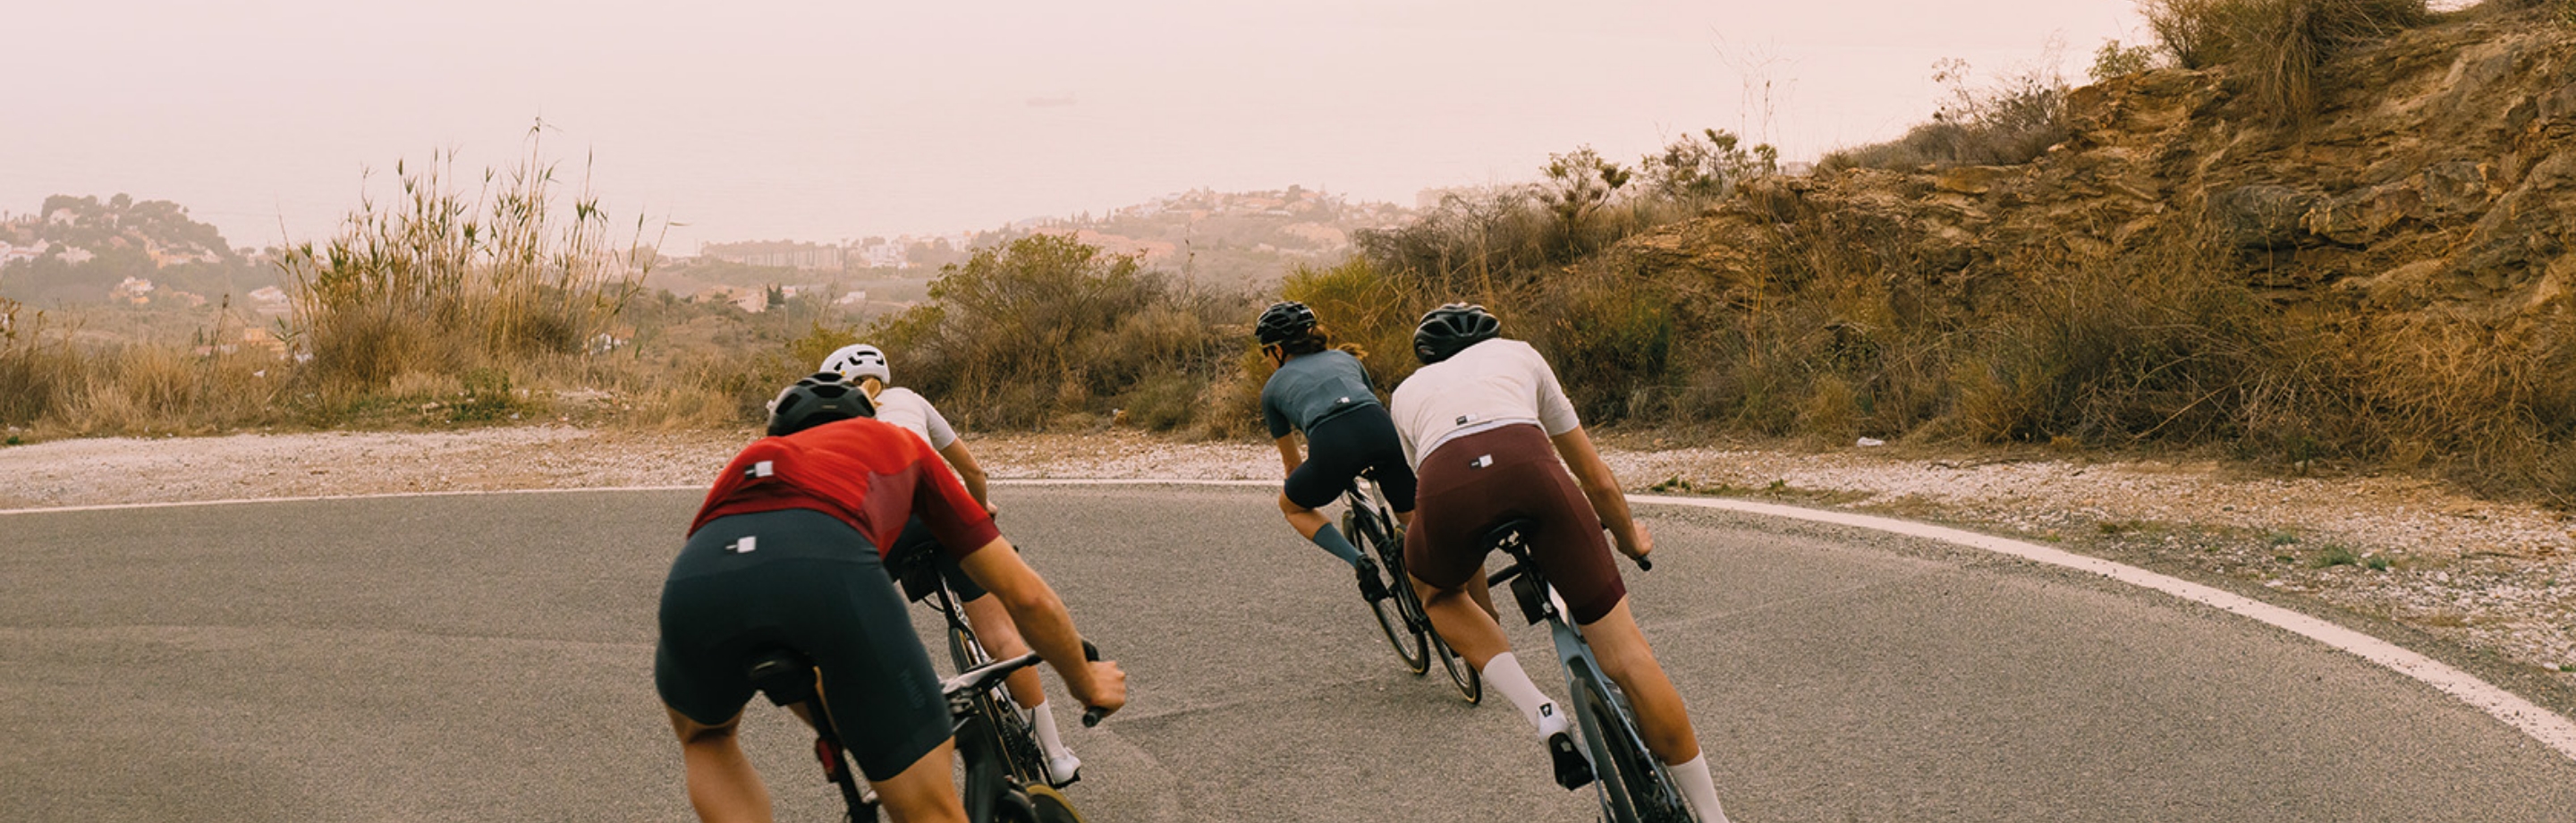 Hoogwaardige fietskleding voor racefietsen, gravelfietsen, bikepacking en de stad